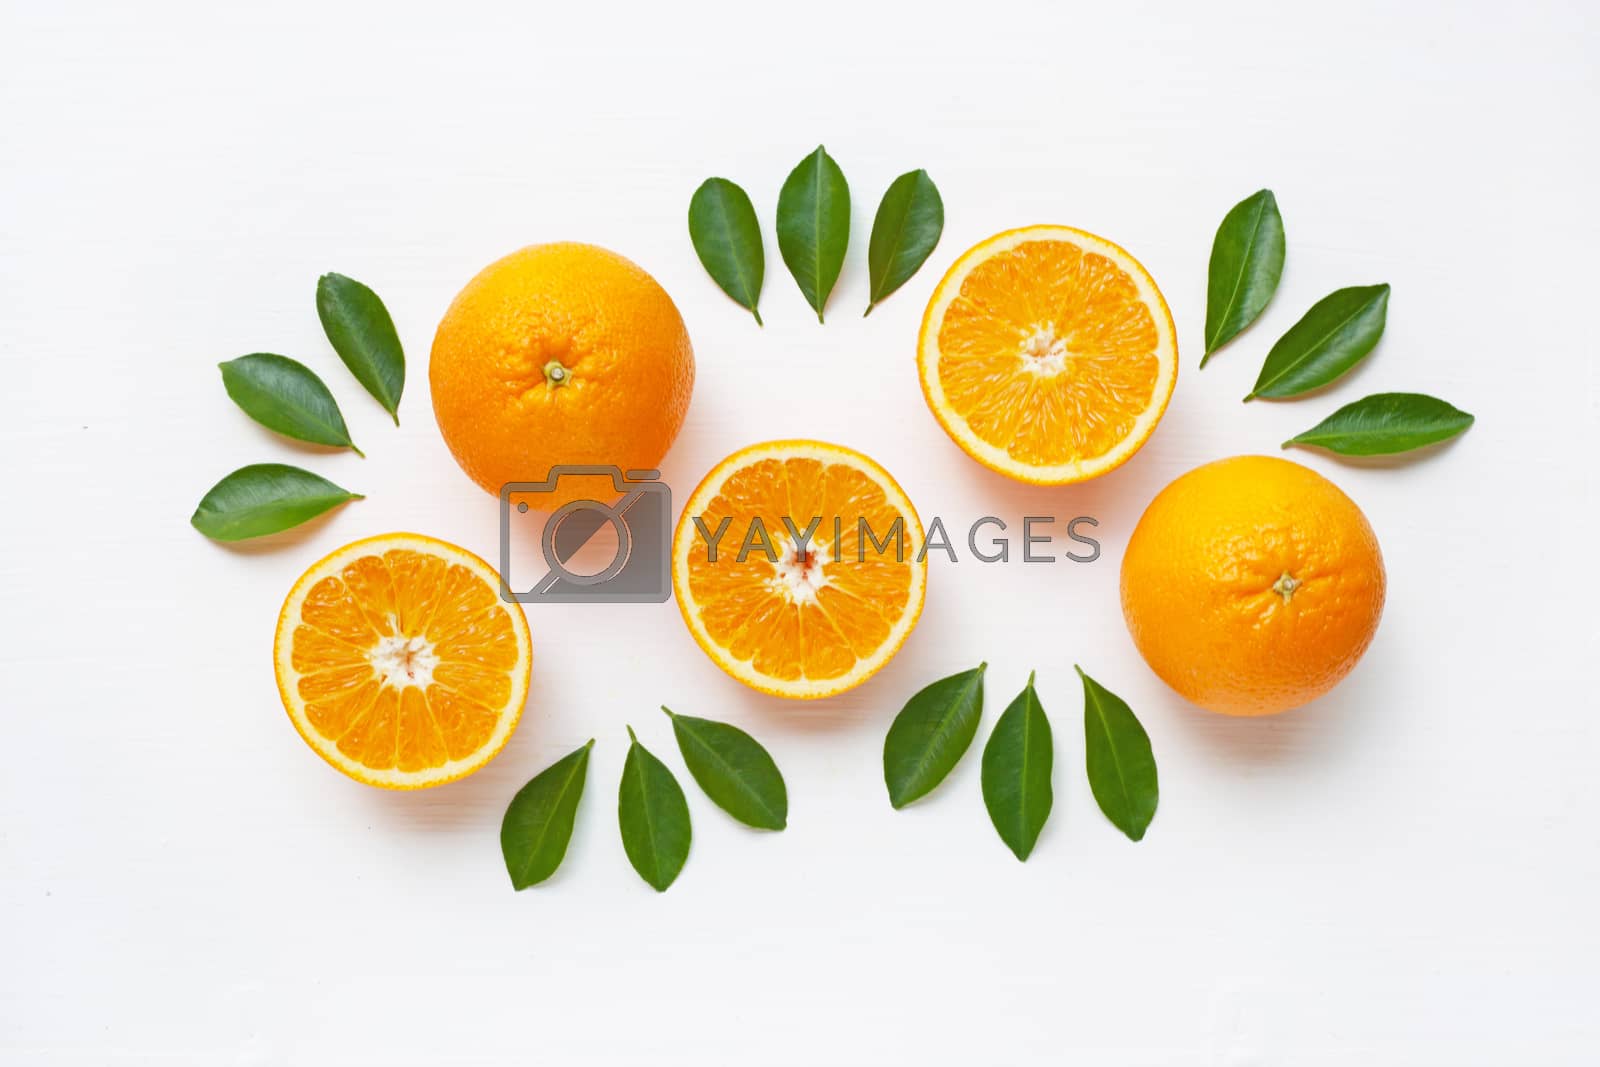 Royalty free image of Fresh orange citrus fruit isolated. by Bowonpat